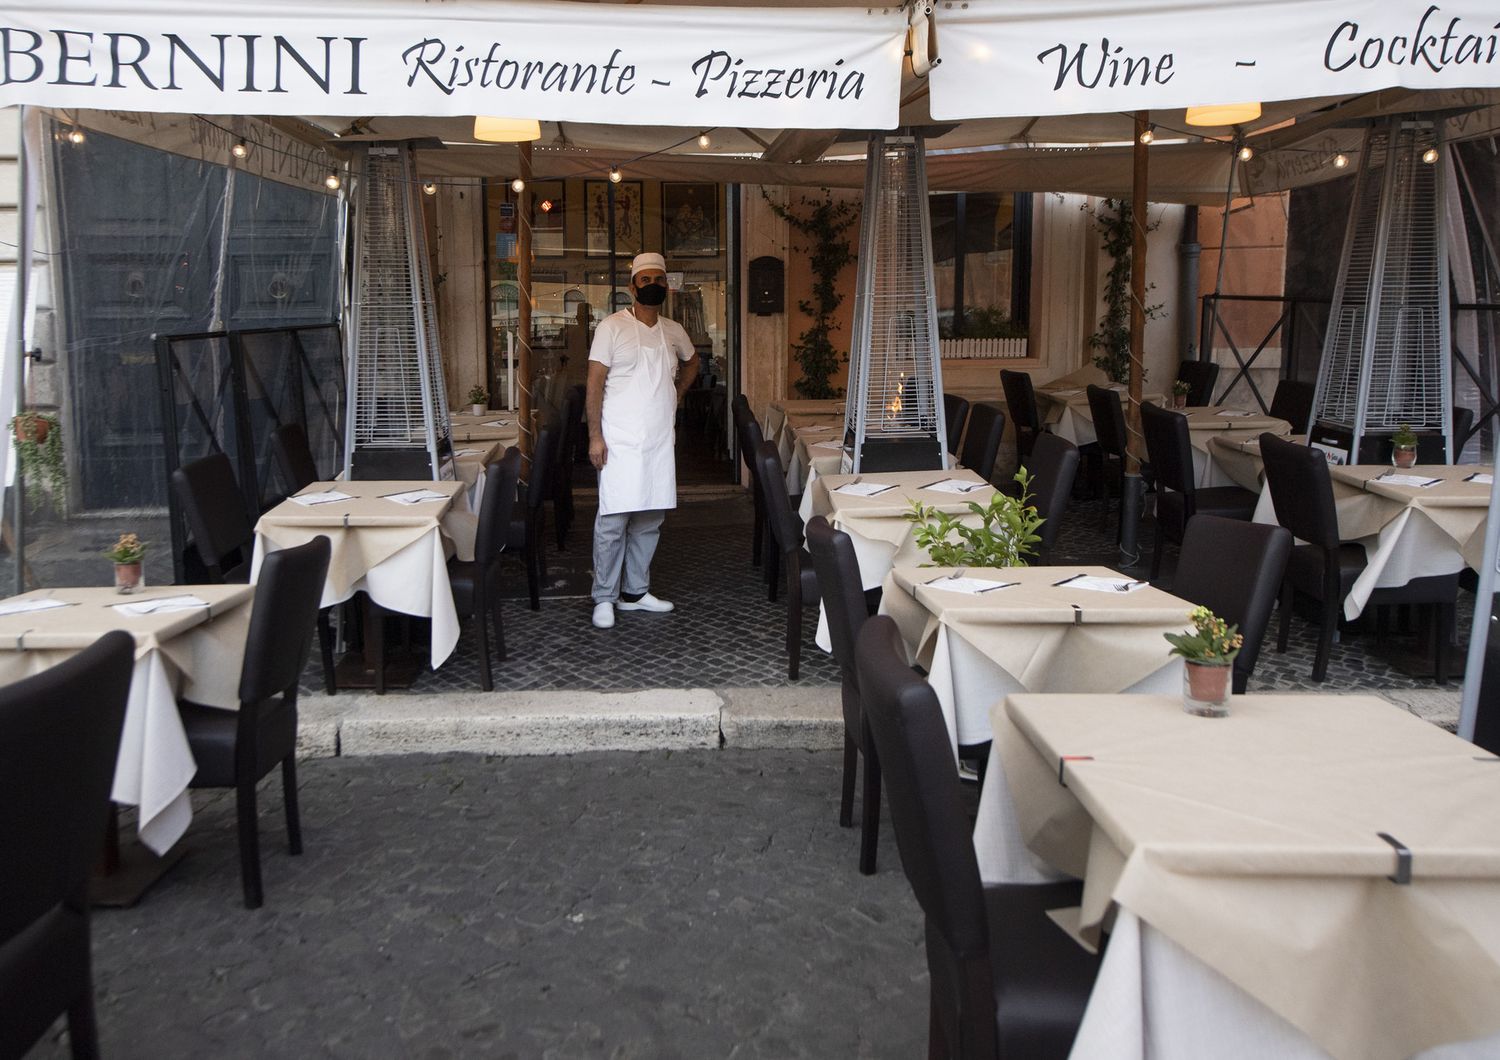 Un ristorante di Roma durante il Lockdown